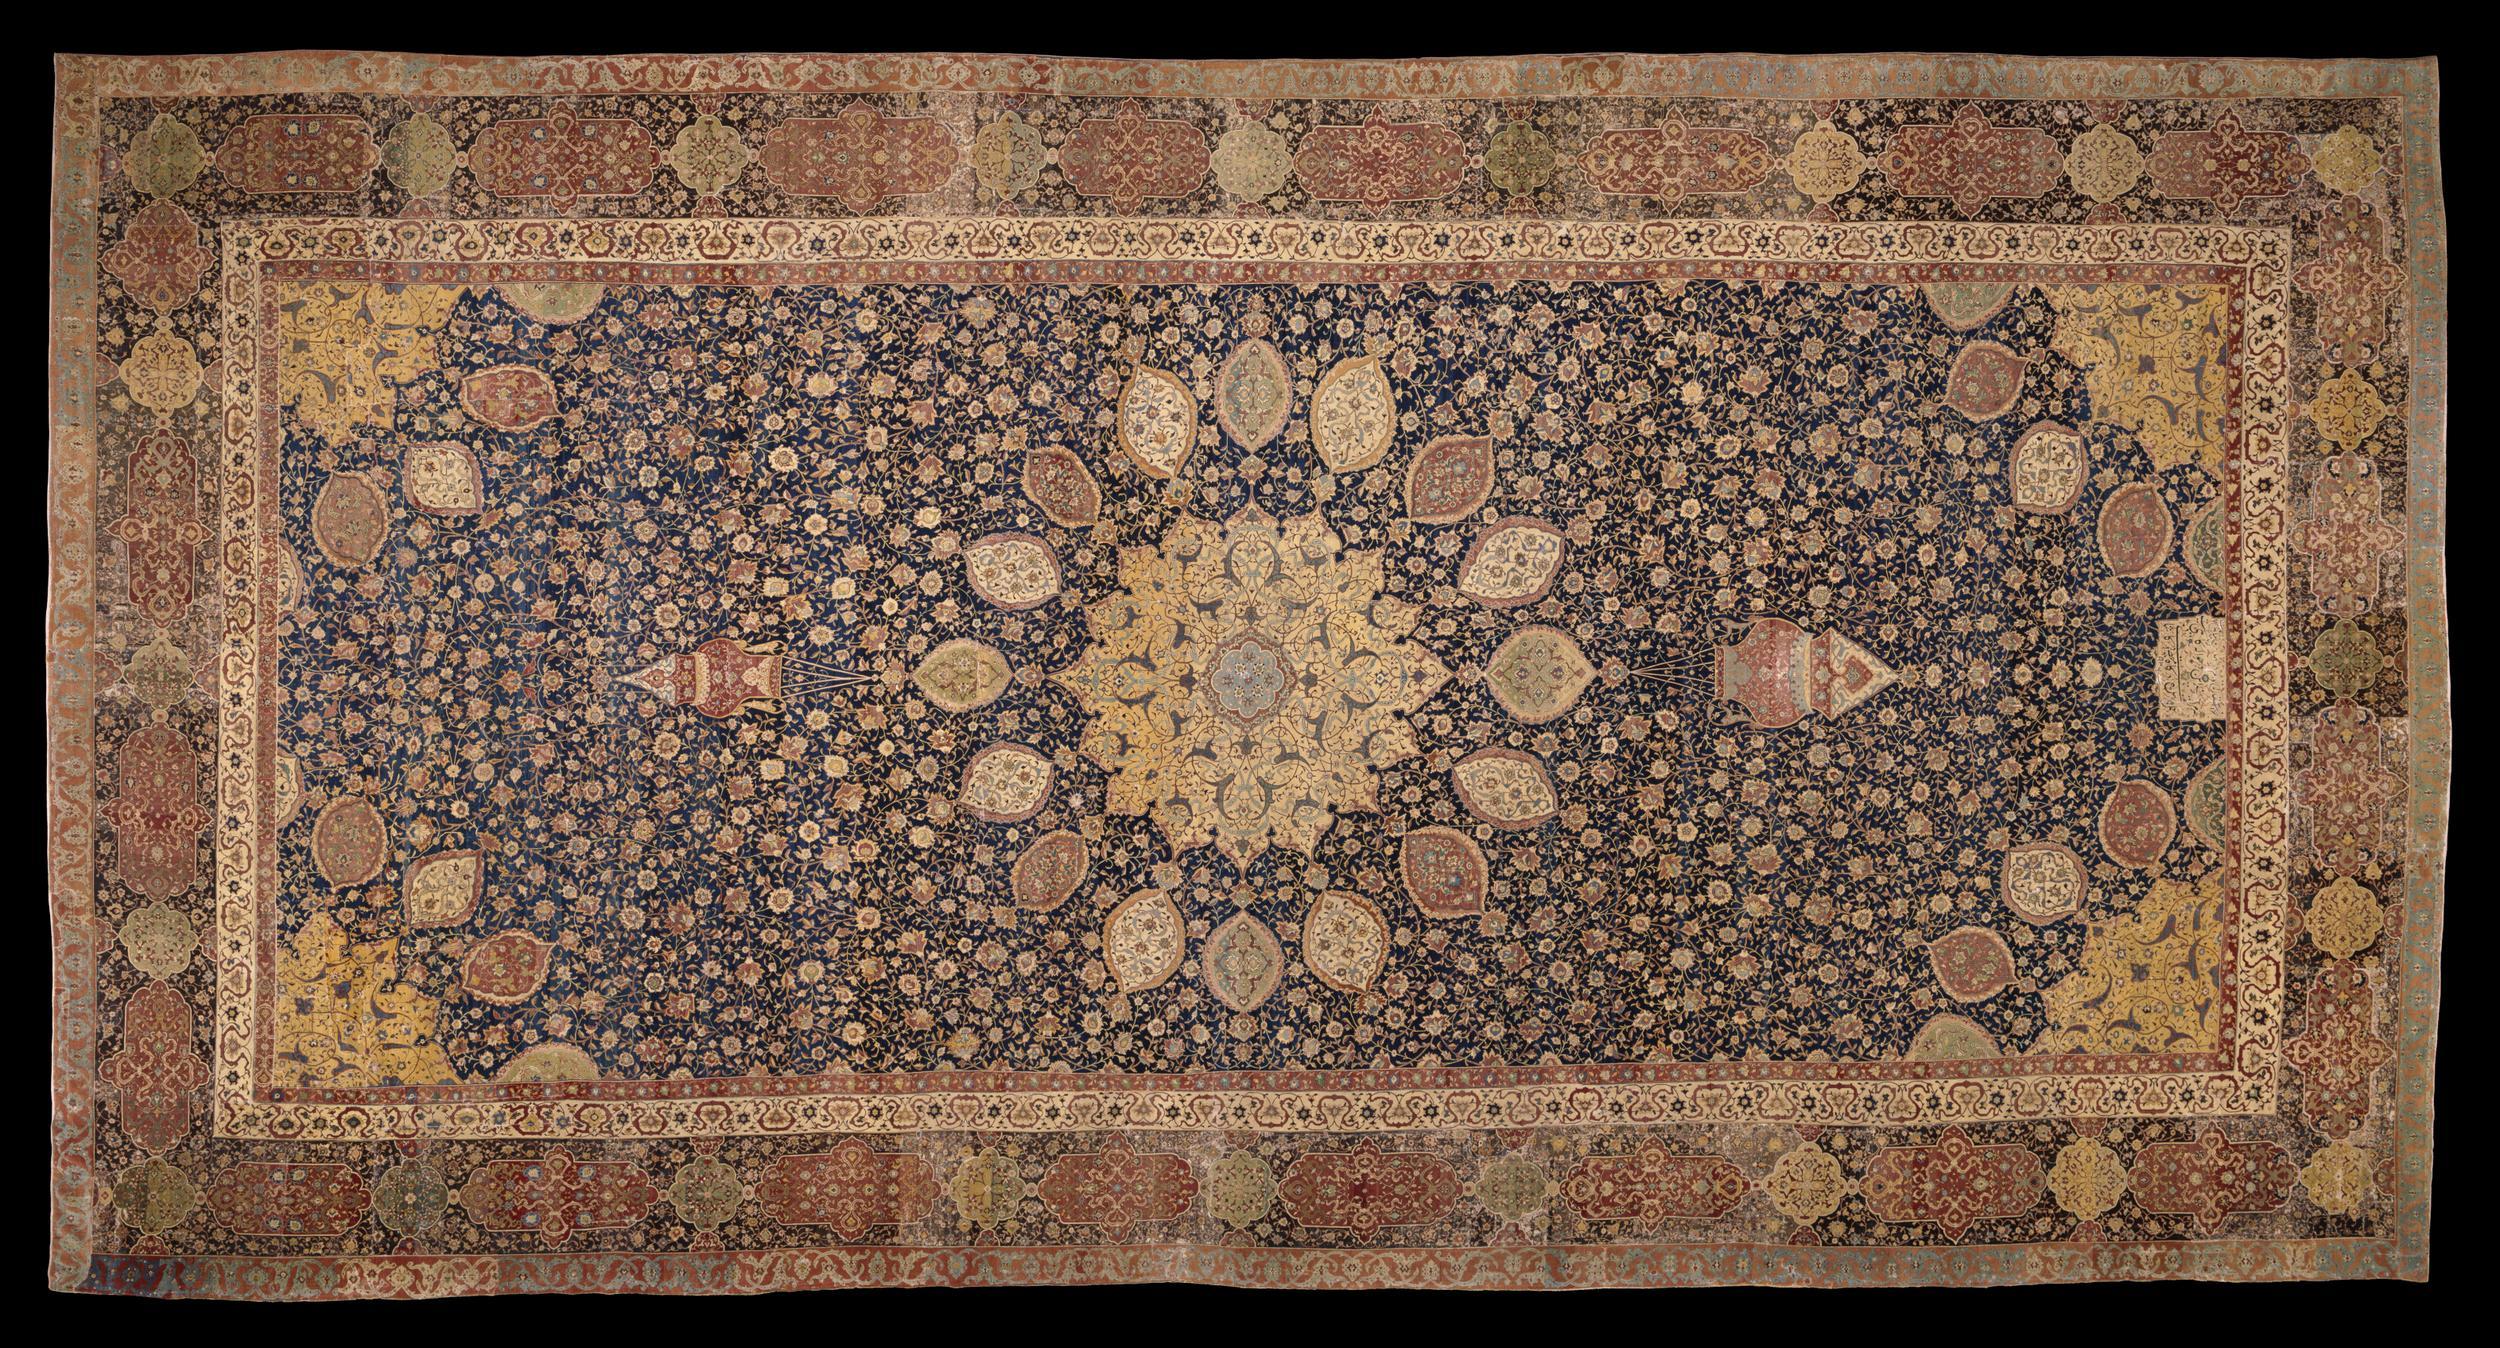 아르다빌 카펫 by Unknown Artist - 1539년 - 1540년 - 11 x 5.35 m 